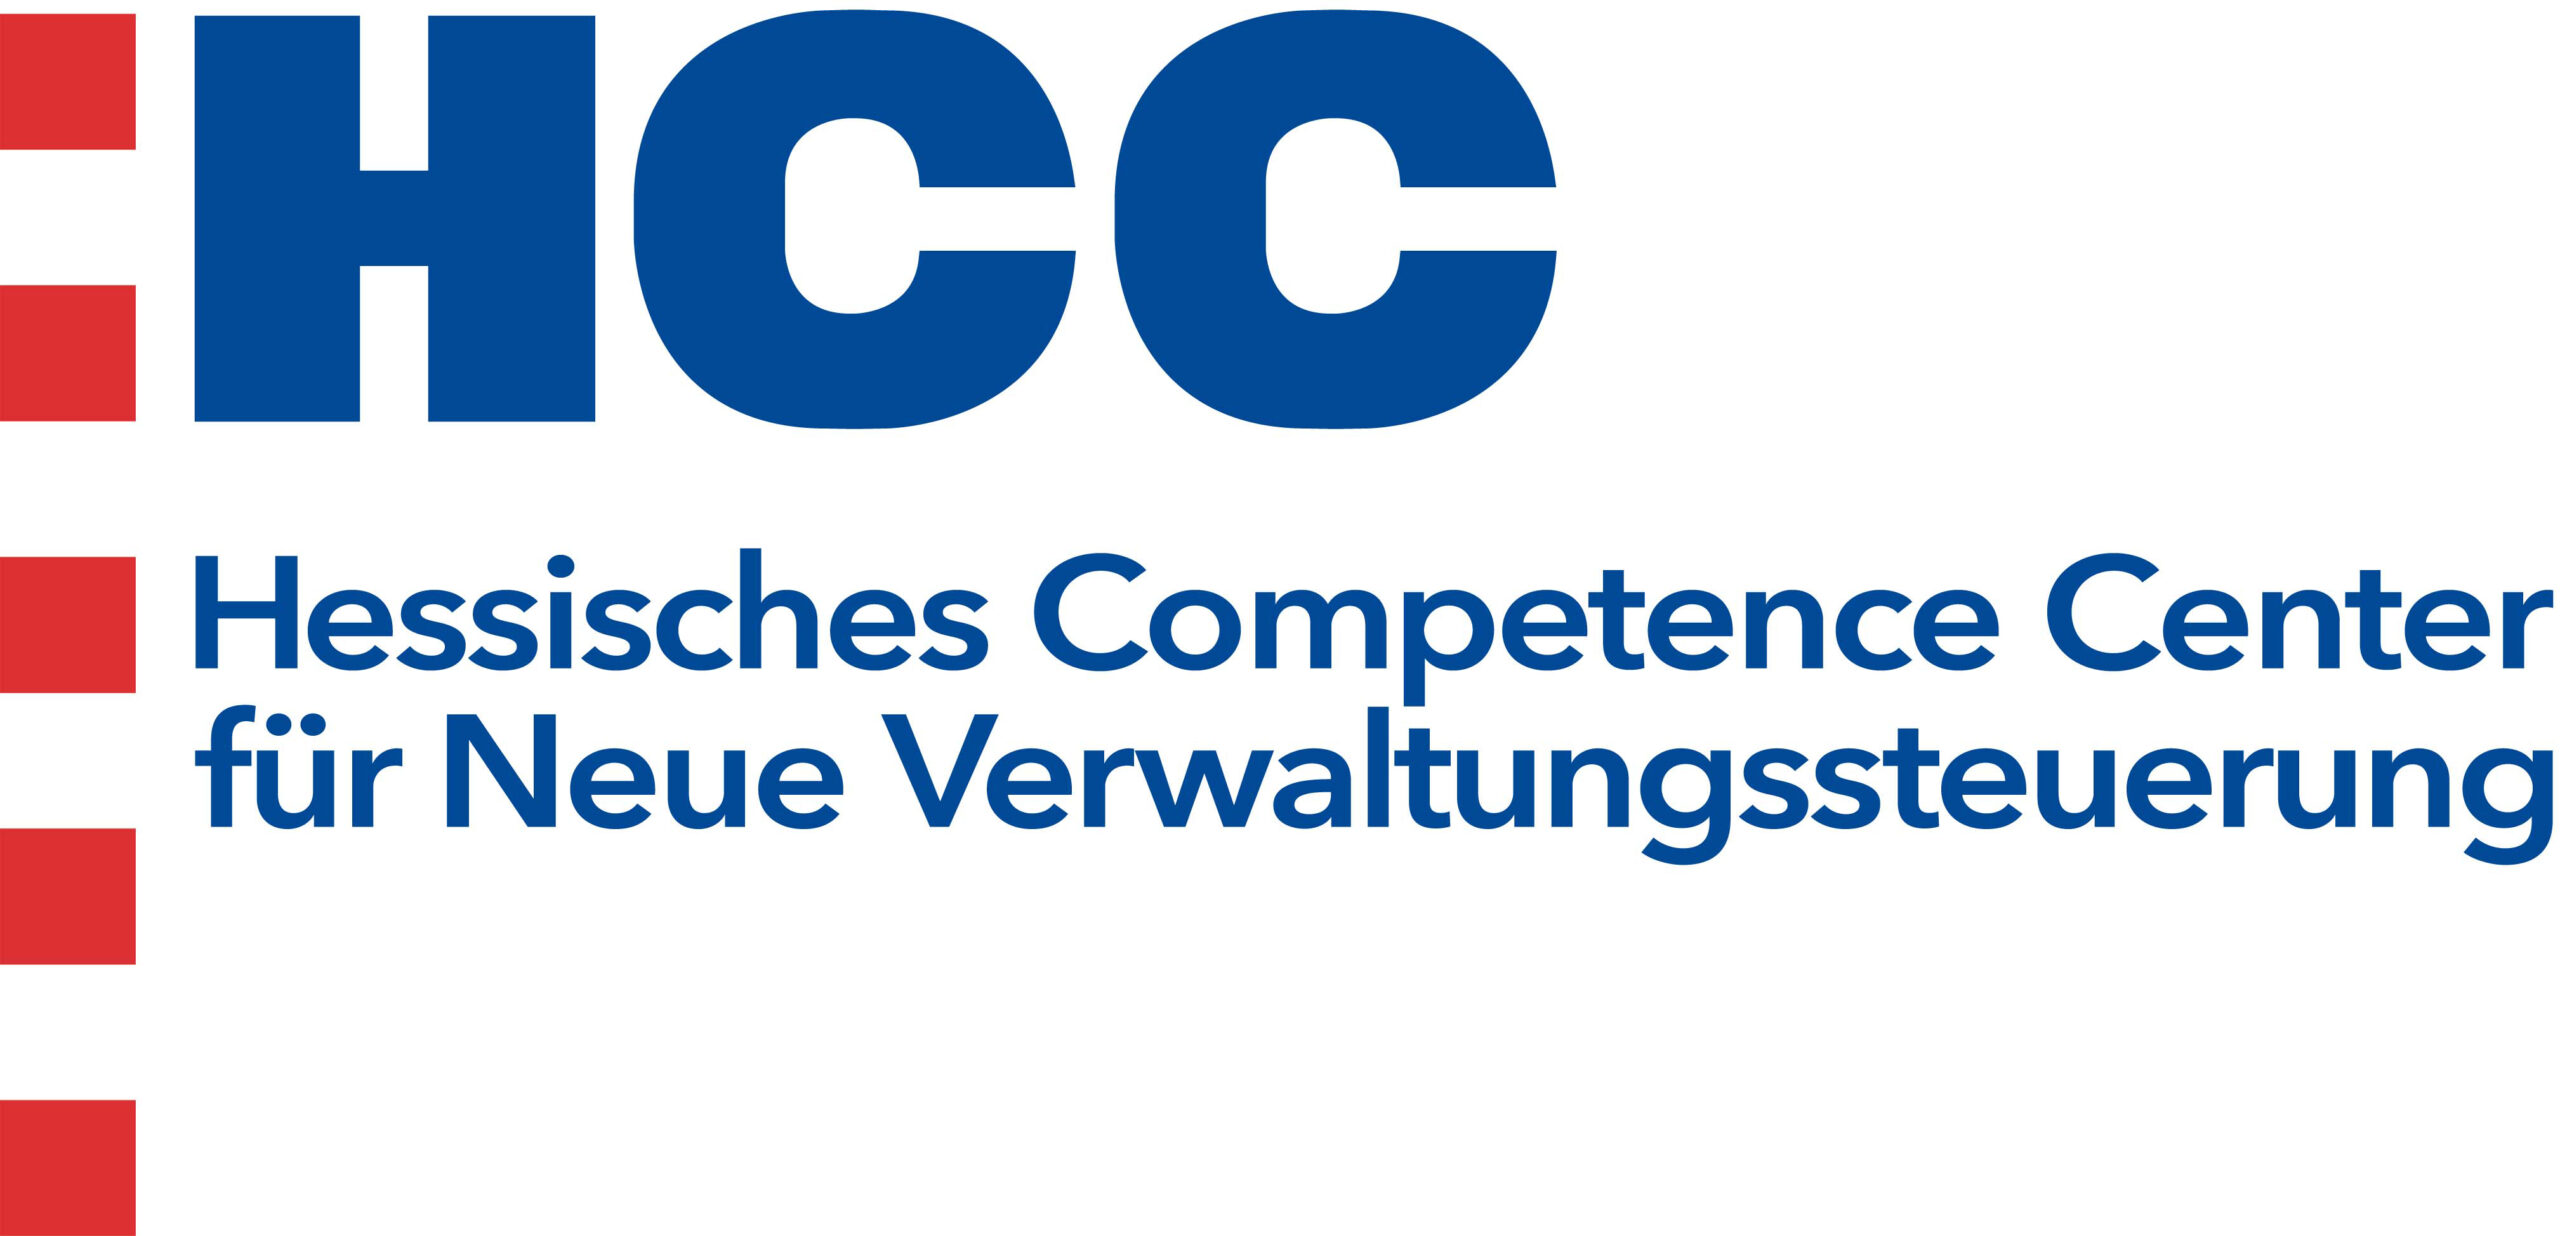 HCC - Hessisches Competence Center für Neue Verwaltungssteuerung